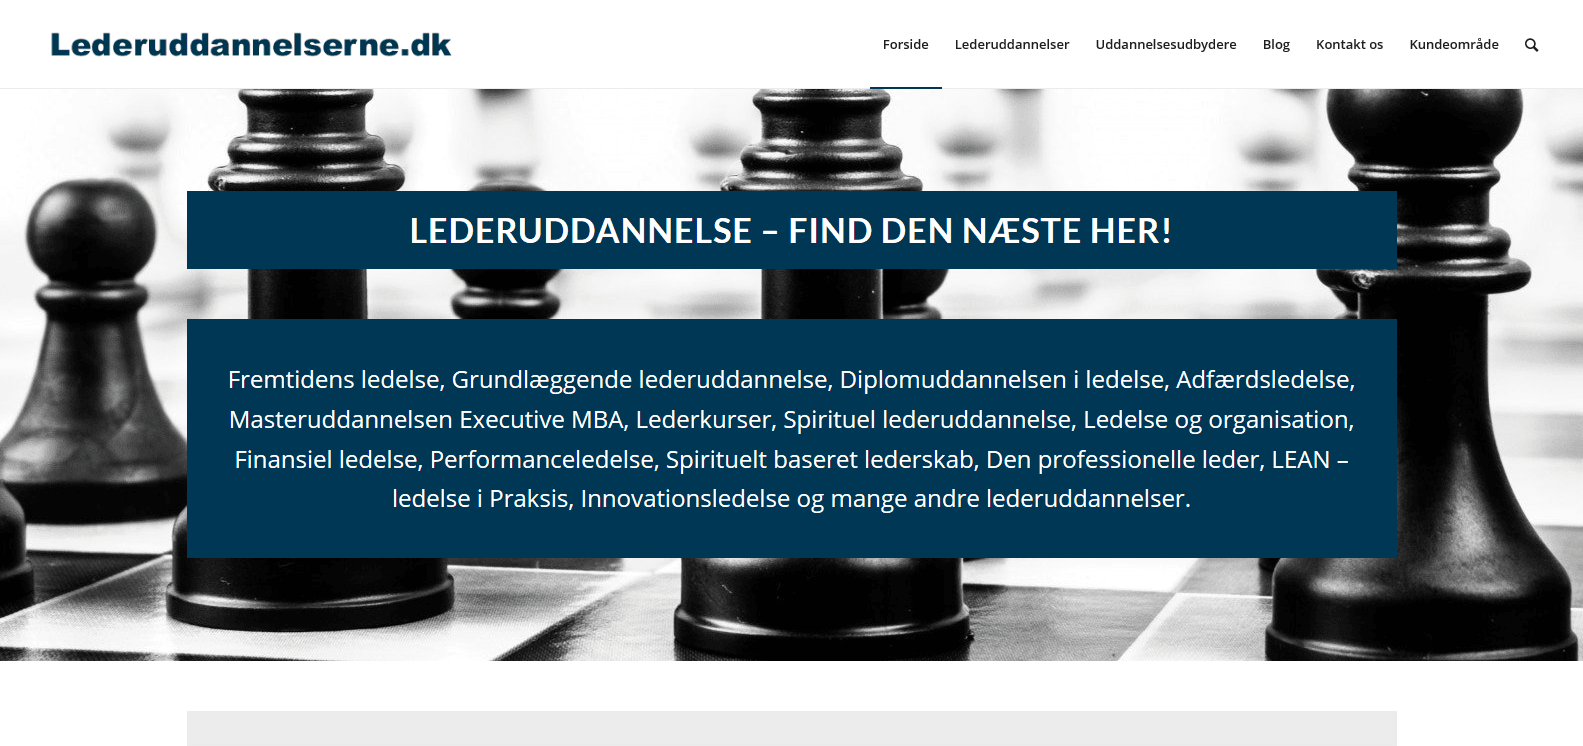 Lederuddannelse - find den næste her - Uddannelsesudbydere fra DK - WordPress - WPIndex.dk